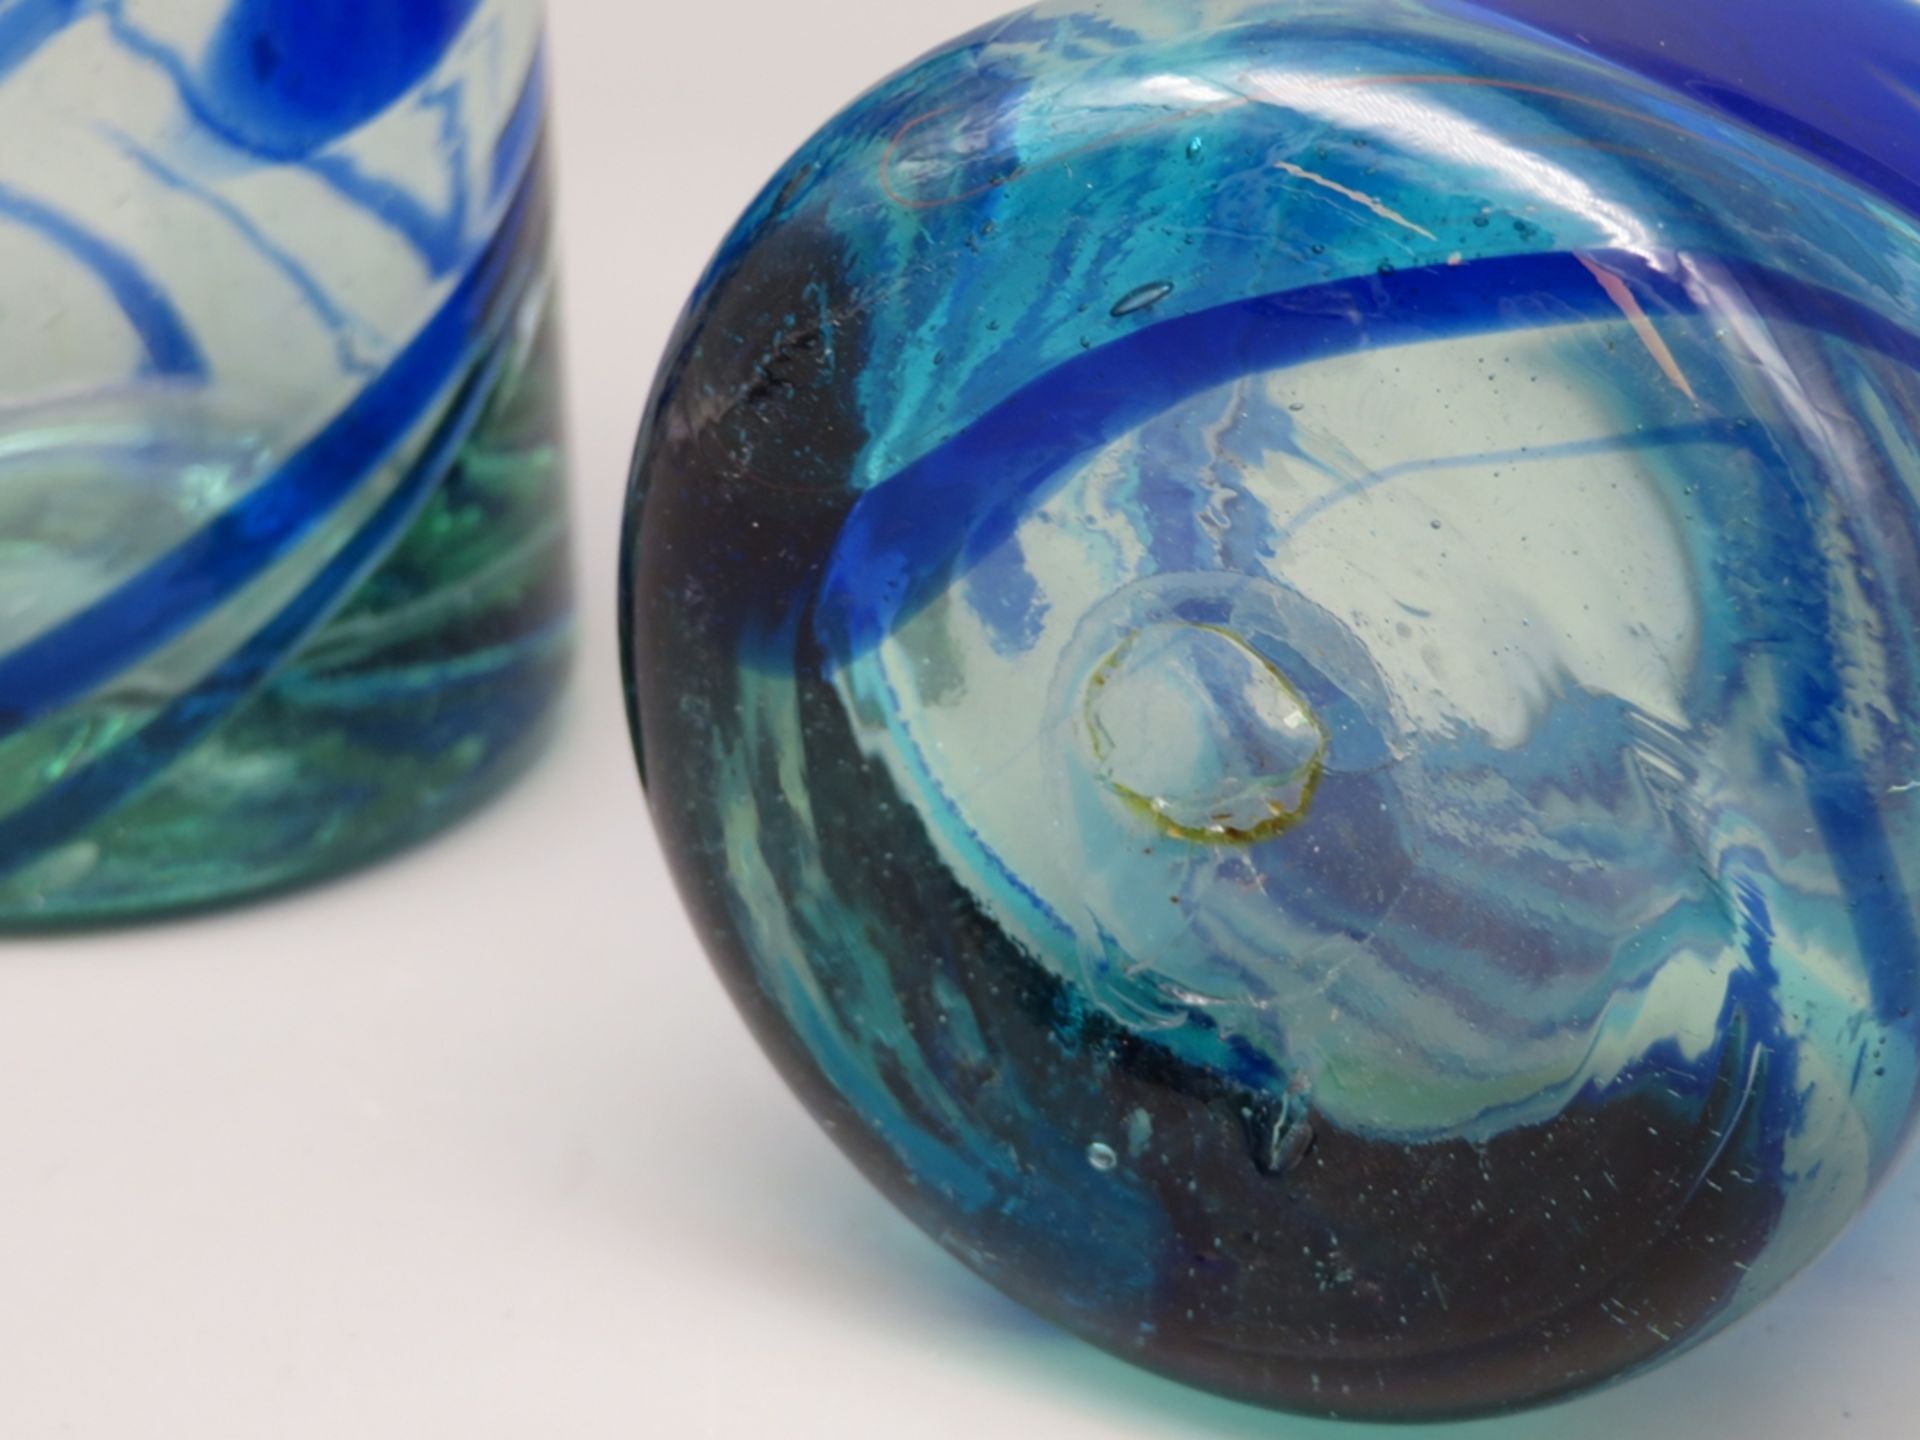 2 Designer Gläser, farbloses Glas mit blau-grünlichen, spiralförmigen Einschmelzungen, mundgeblasen - Image 2 of 2